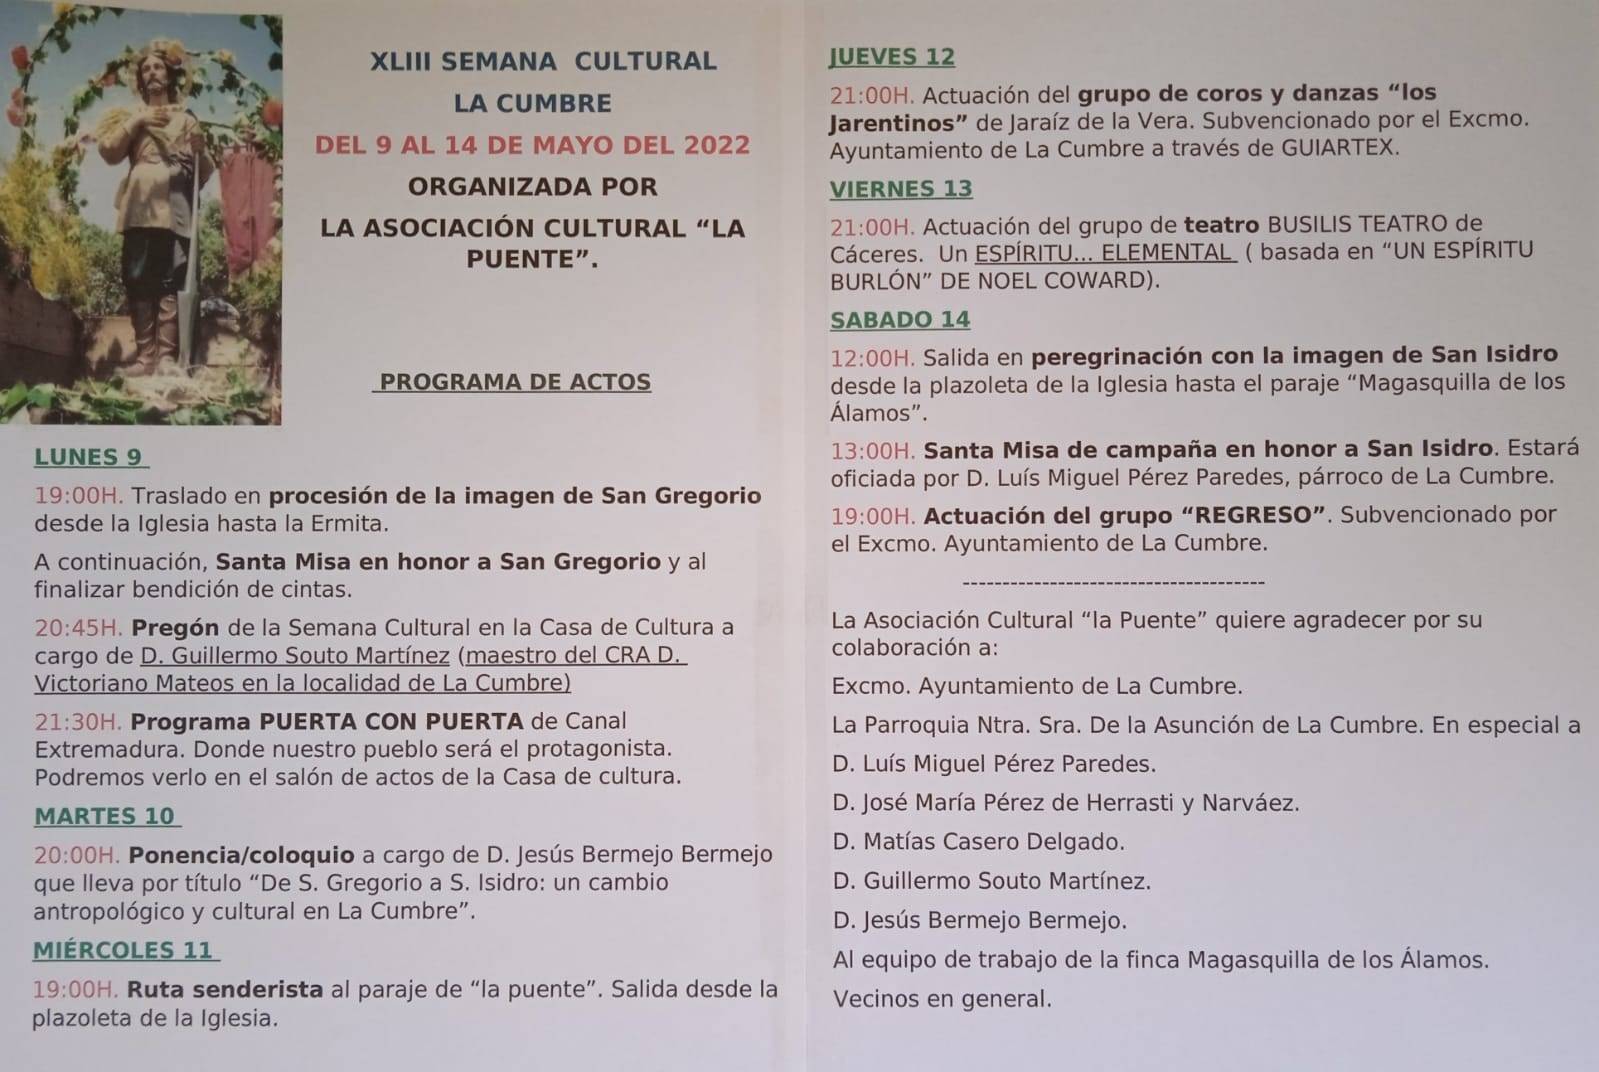 XLIII Semana Cultural - La Cumbre (Cáceres)